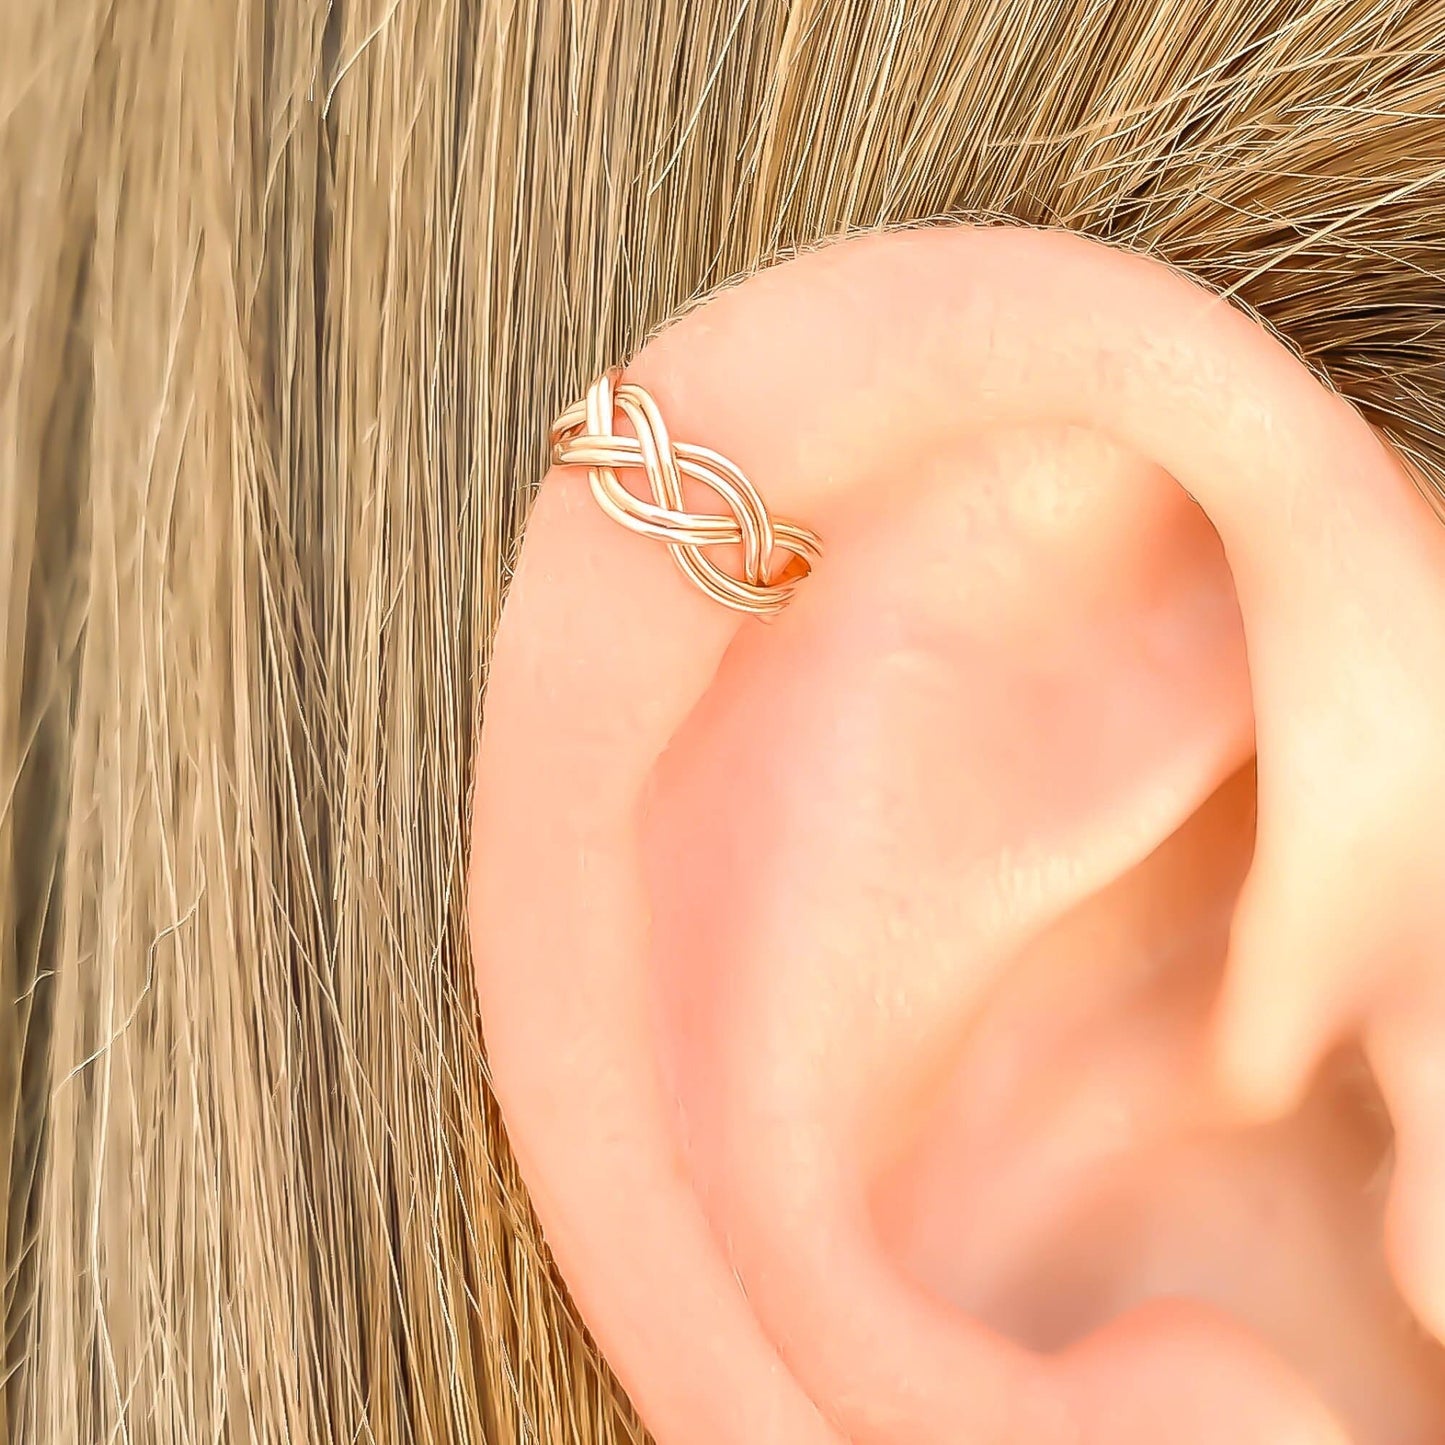 Braid Mini Ear Cuff, 14K Rose Gold Filled